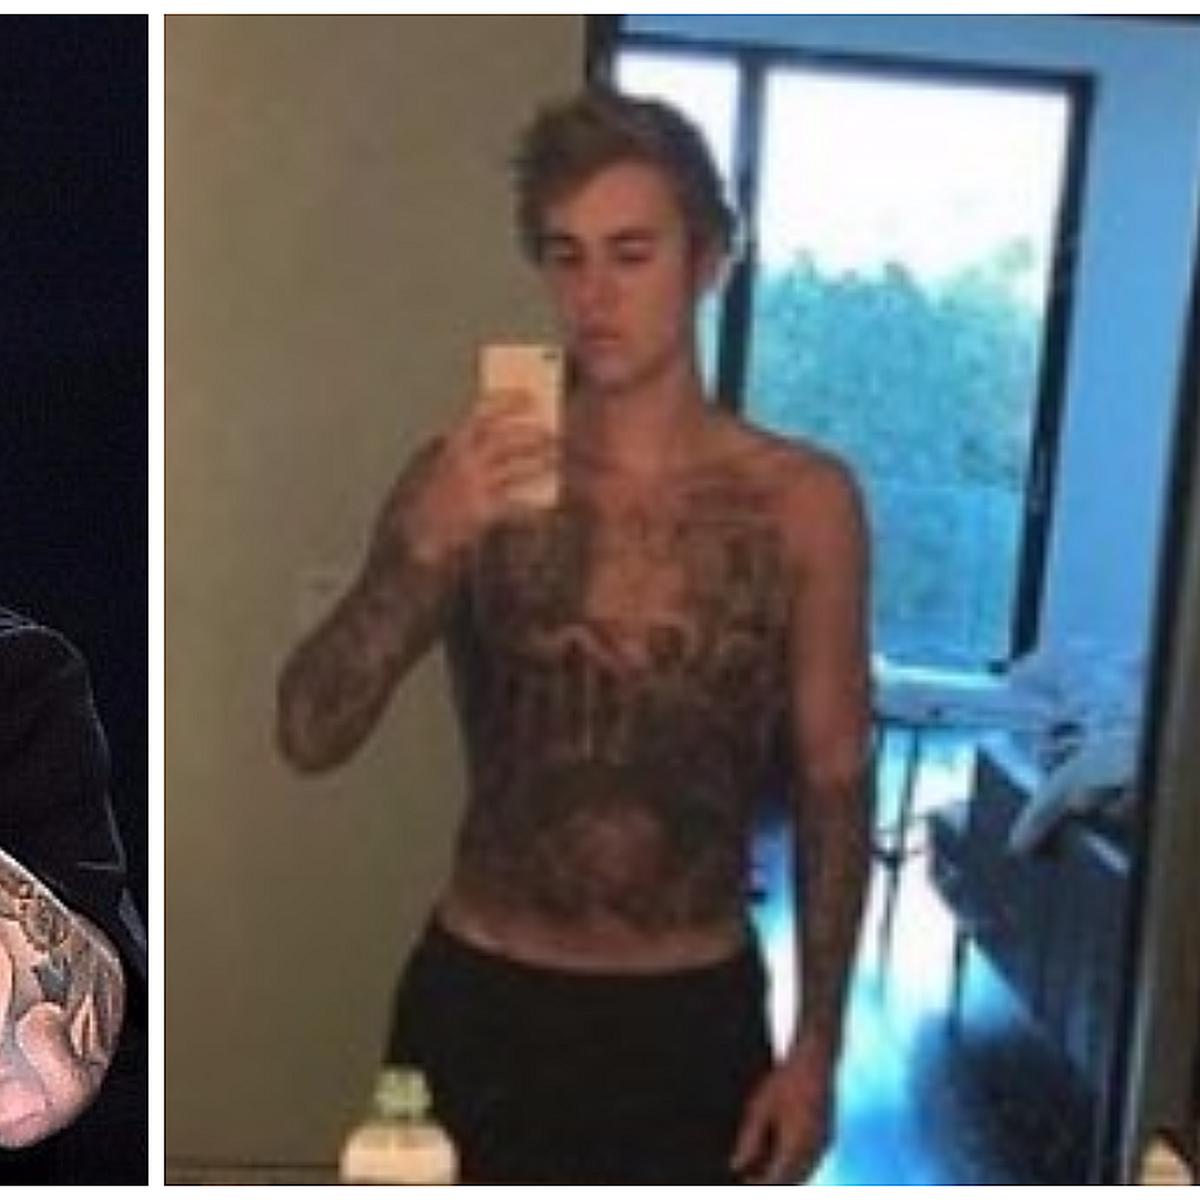 Justin Bieber impacta con tatuaje en todo el abdomen y lo critican (VIDEO)  | ESPECTACULOS | CORREO